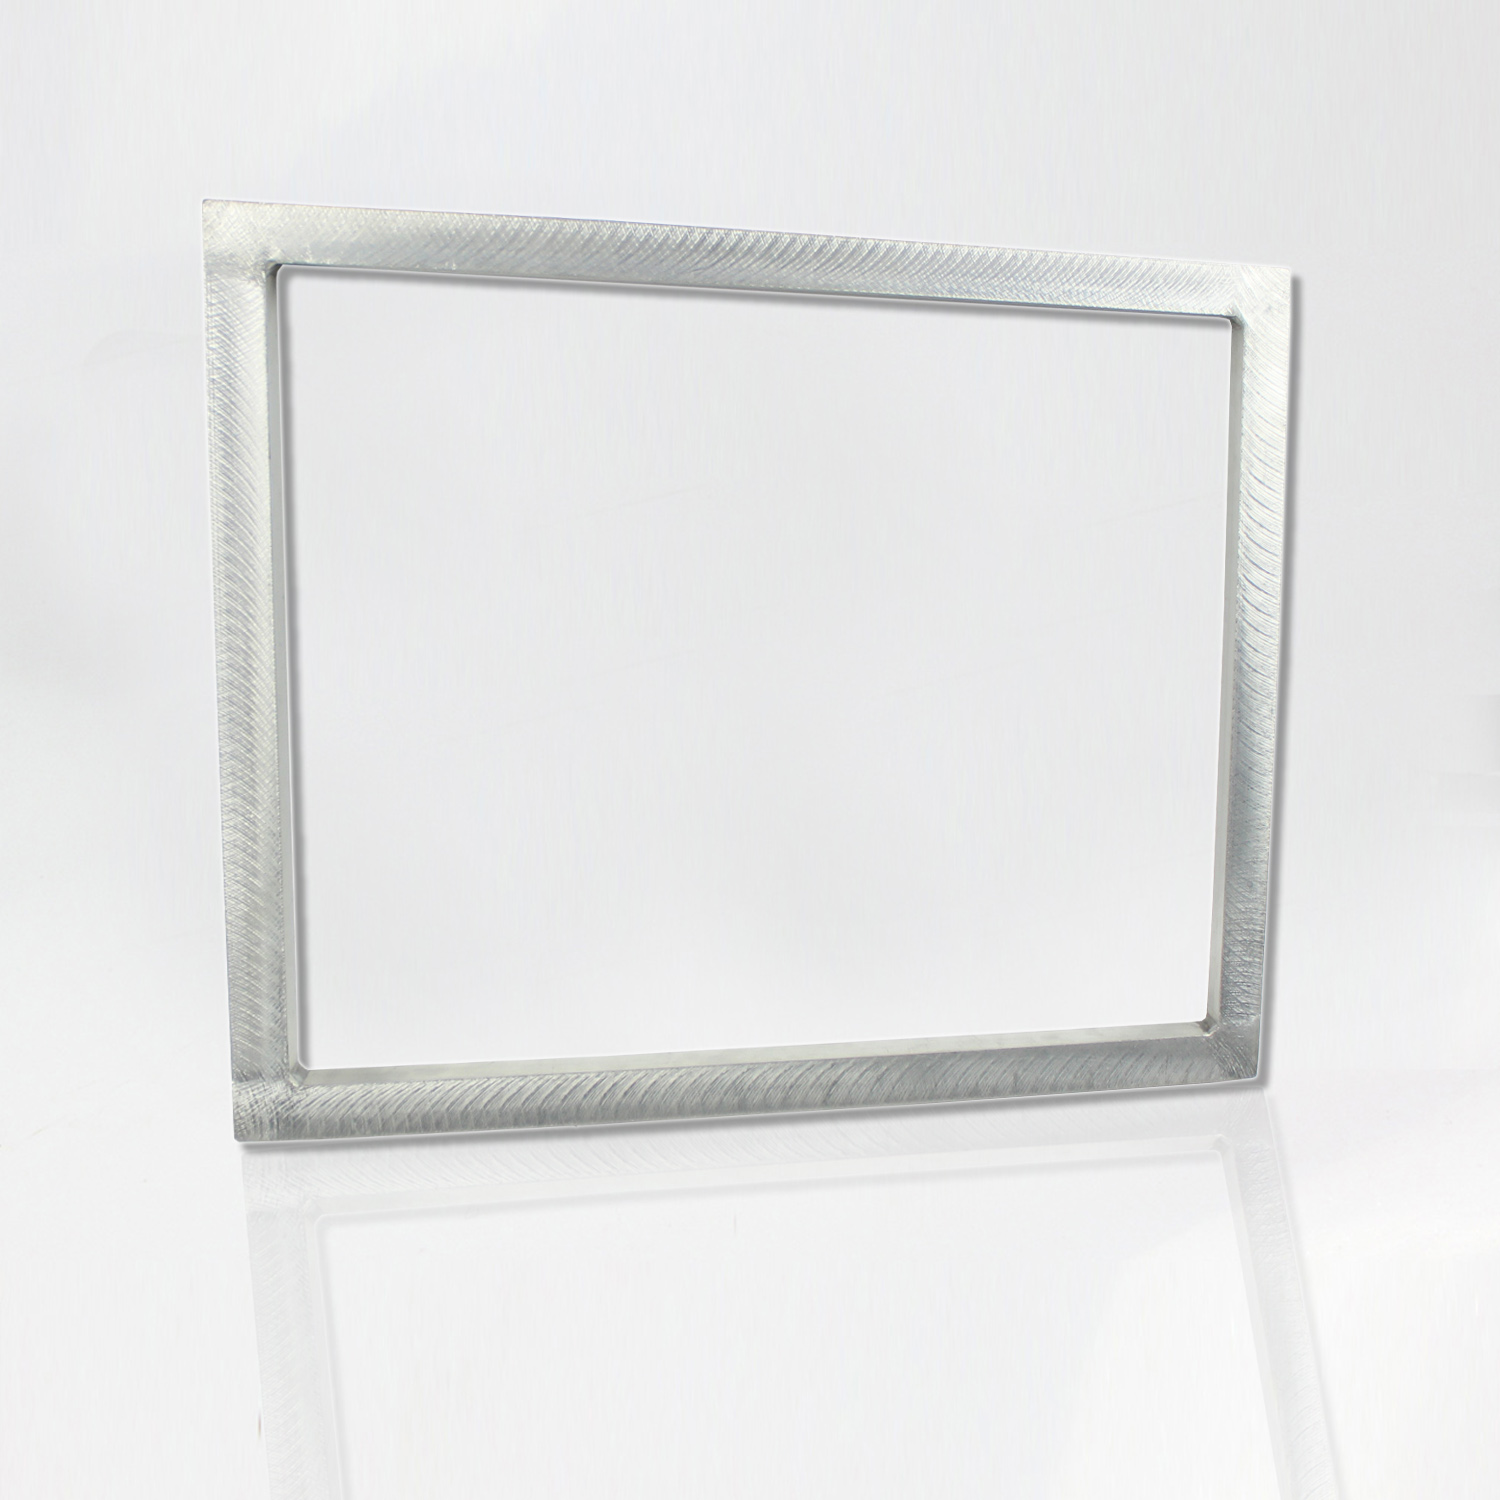 Aluminium Frame 23 "x 31" (sura tu) Featured Image